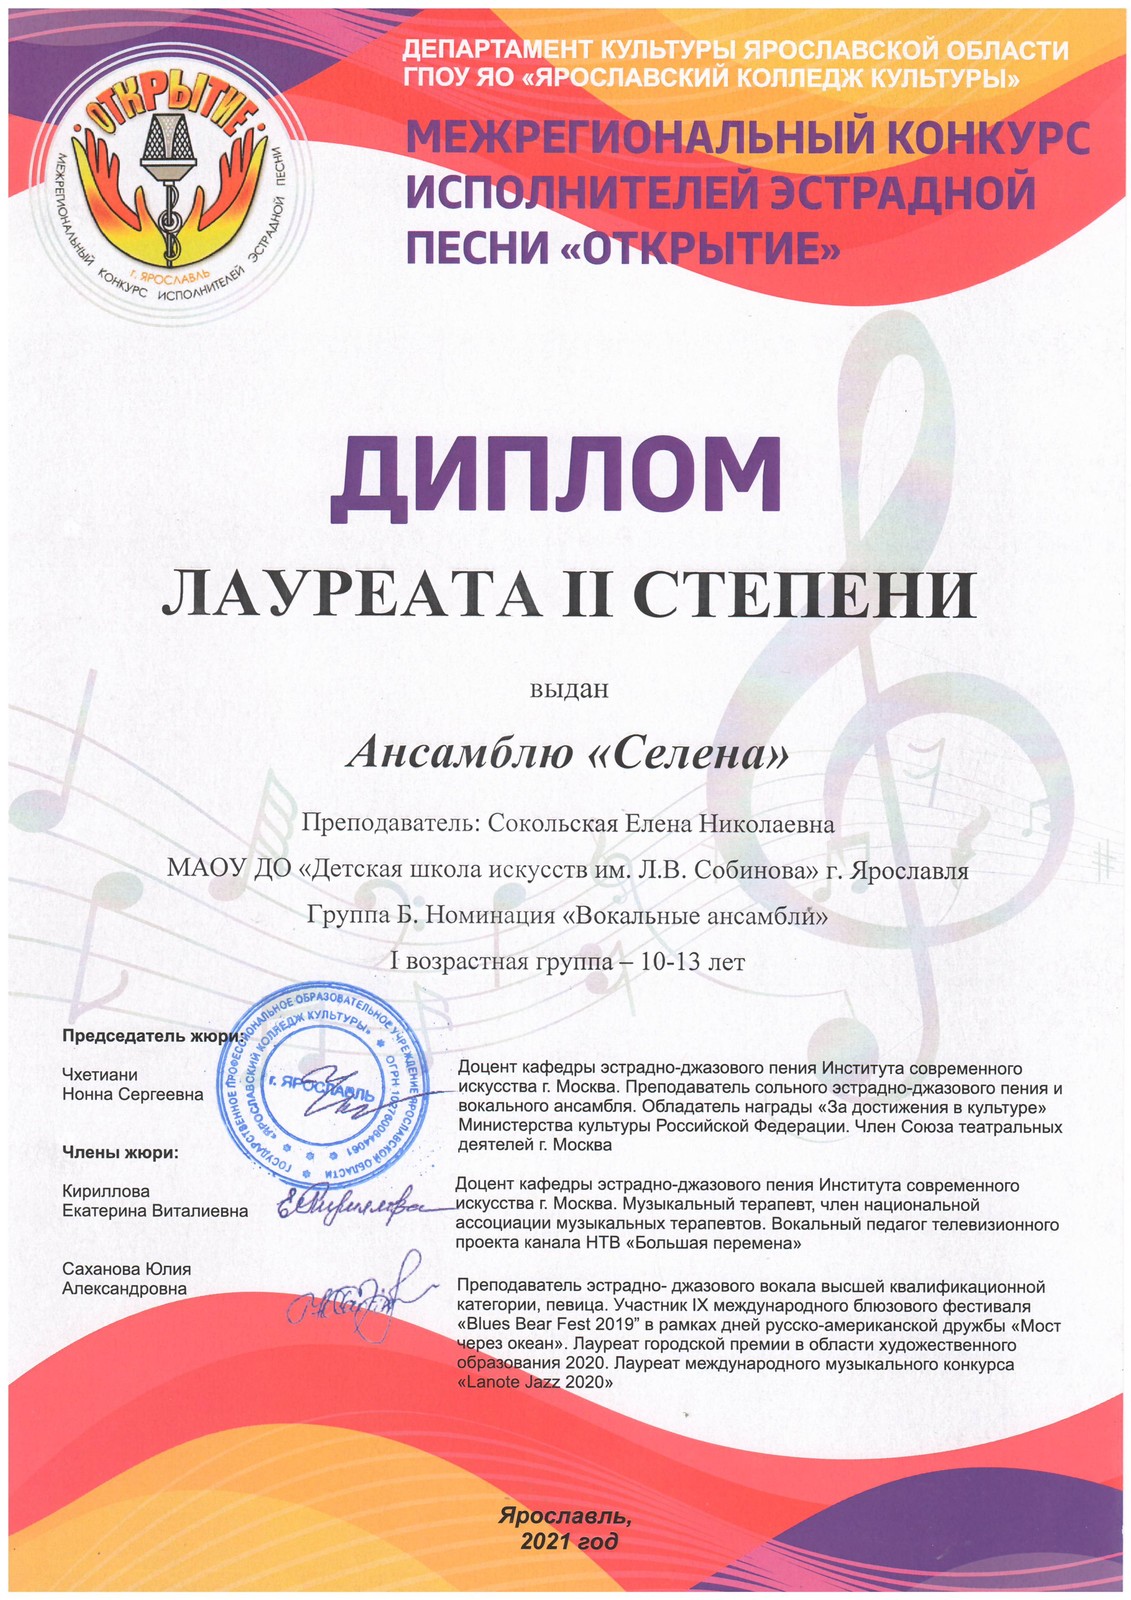 Лауреатом II степени Конкурса исполнителей эстрадной песни стал ансамбль «СЕЛЕНА» в возрастной группе 10 — 13 лет